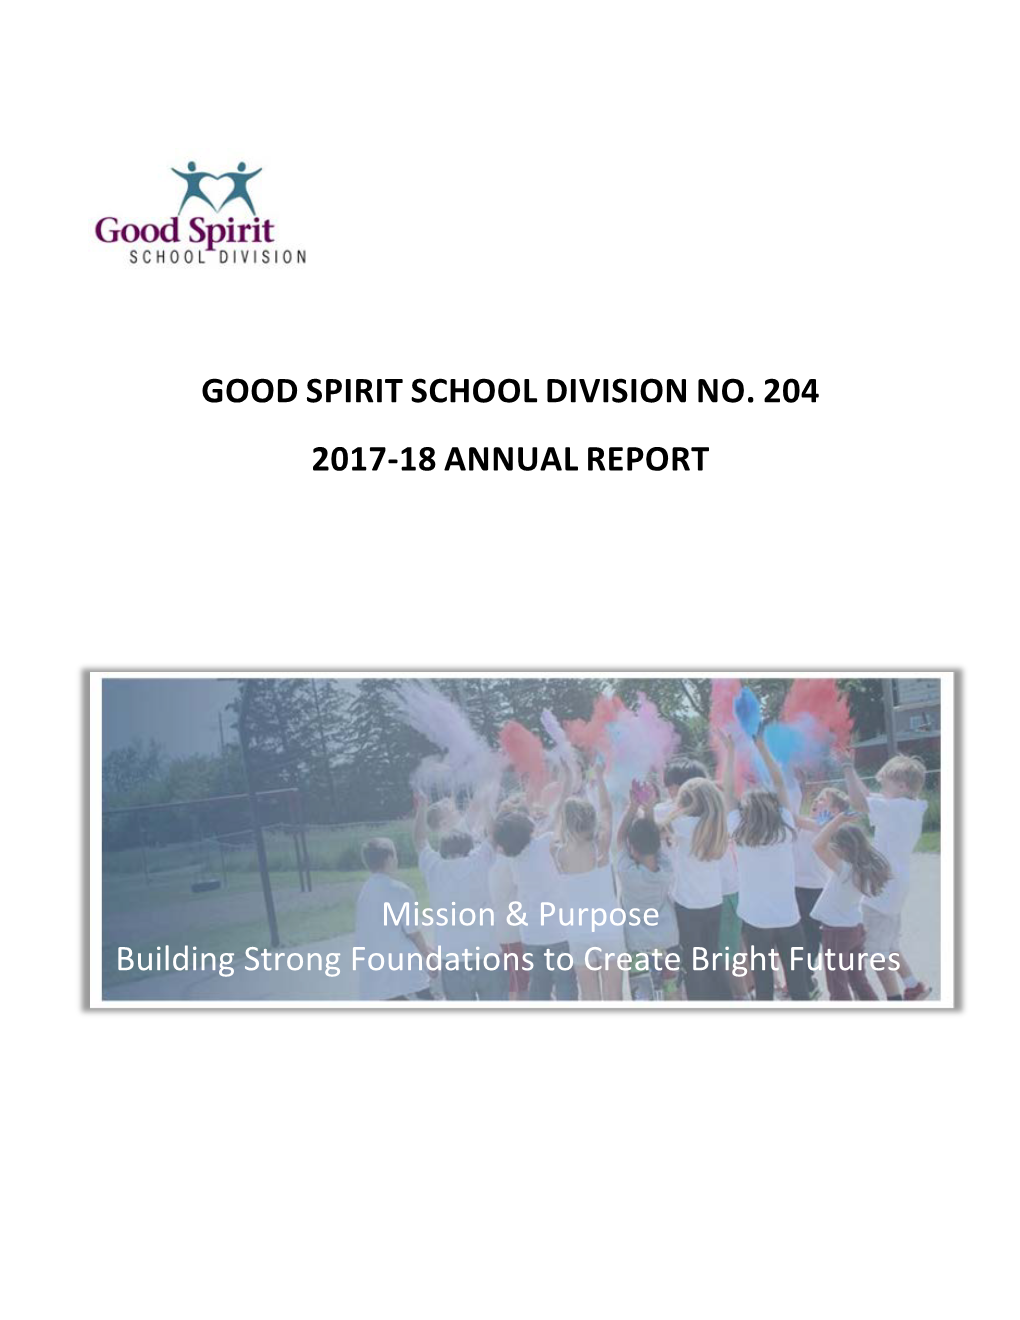 2017-18 Good Spirit School Division No. 204 Annual Report